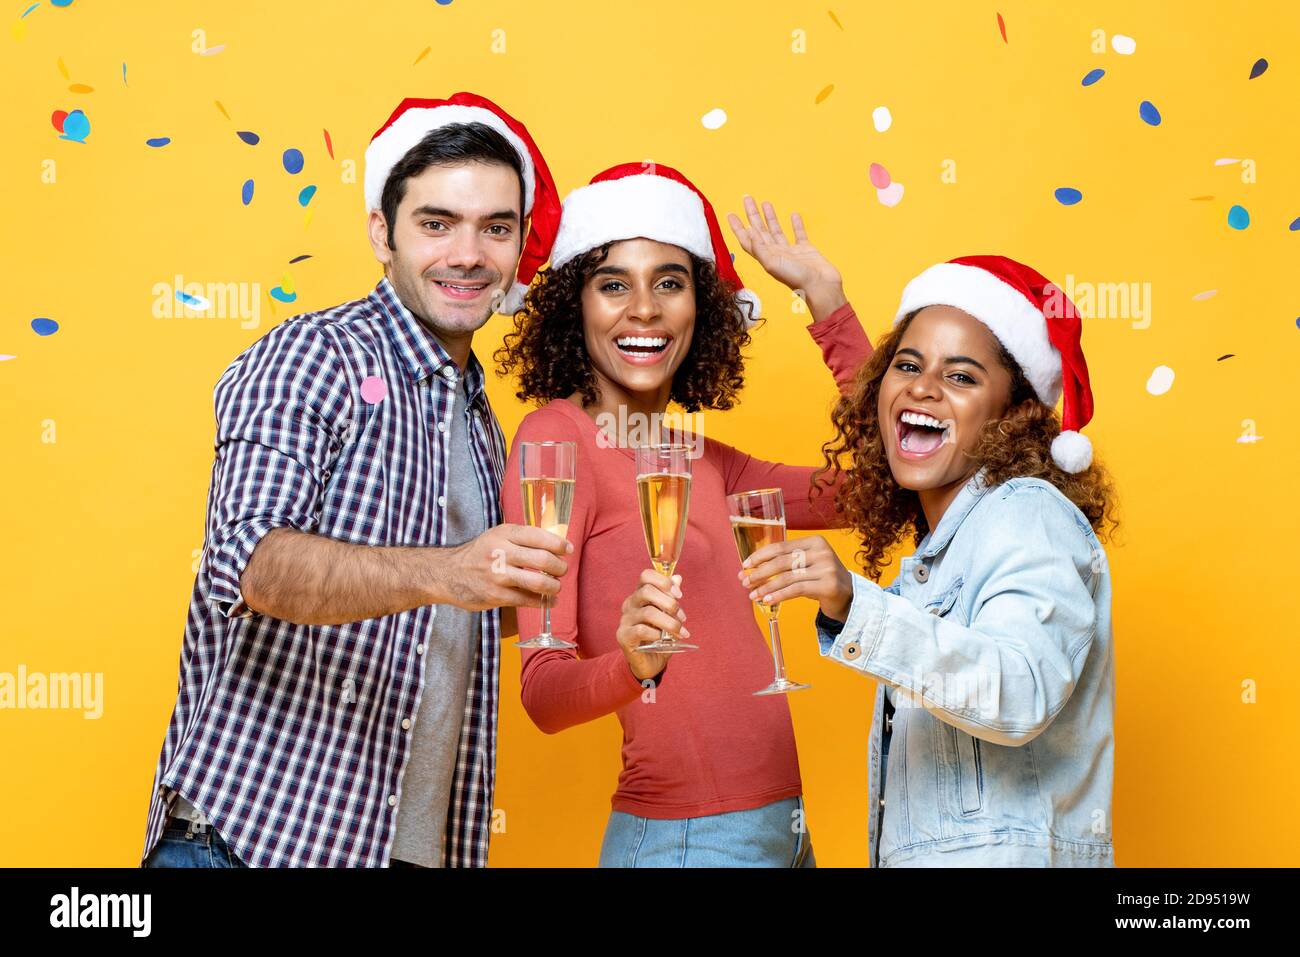 Groupe d'amis multiraciaux heureux célébrant Noël boire du champagne ensemble sur fond jaune studio avec confetti Banque D'Images